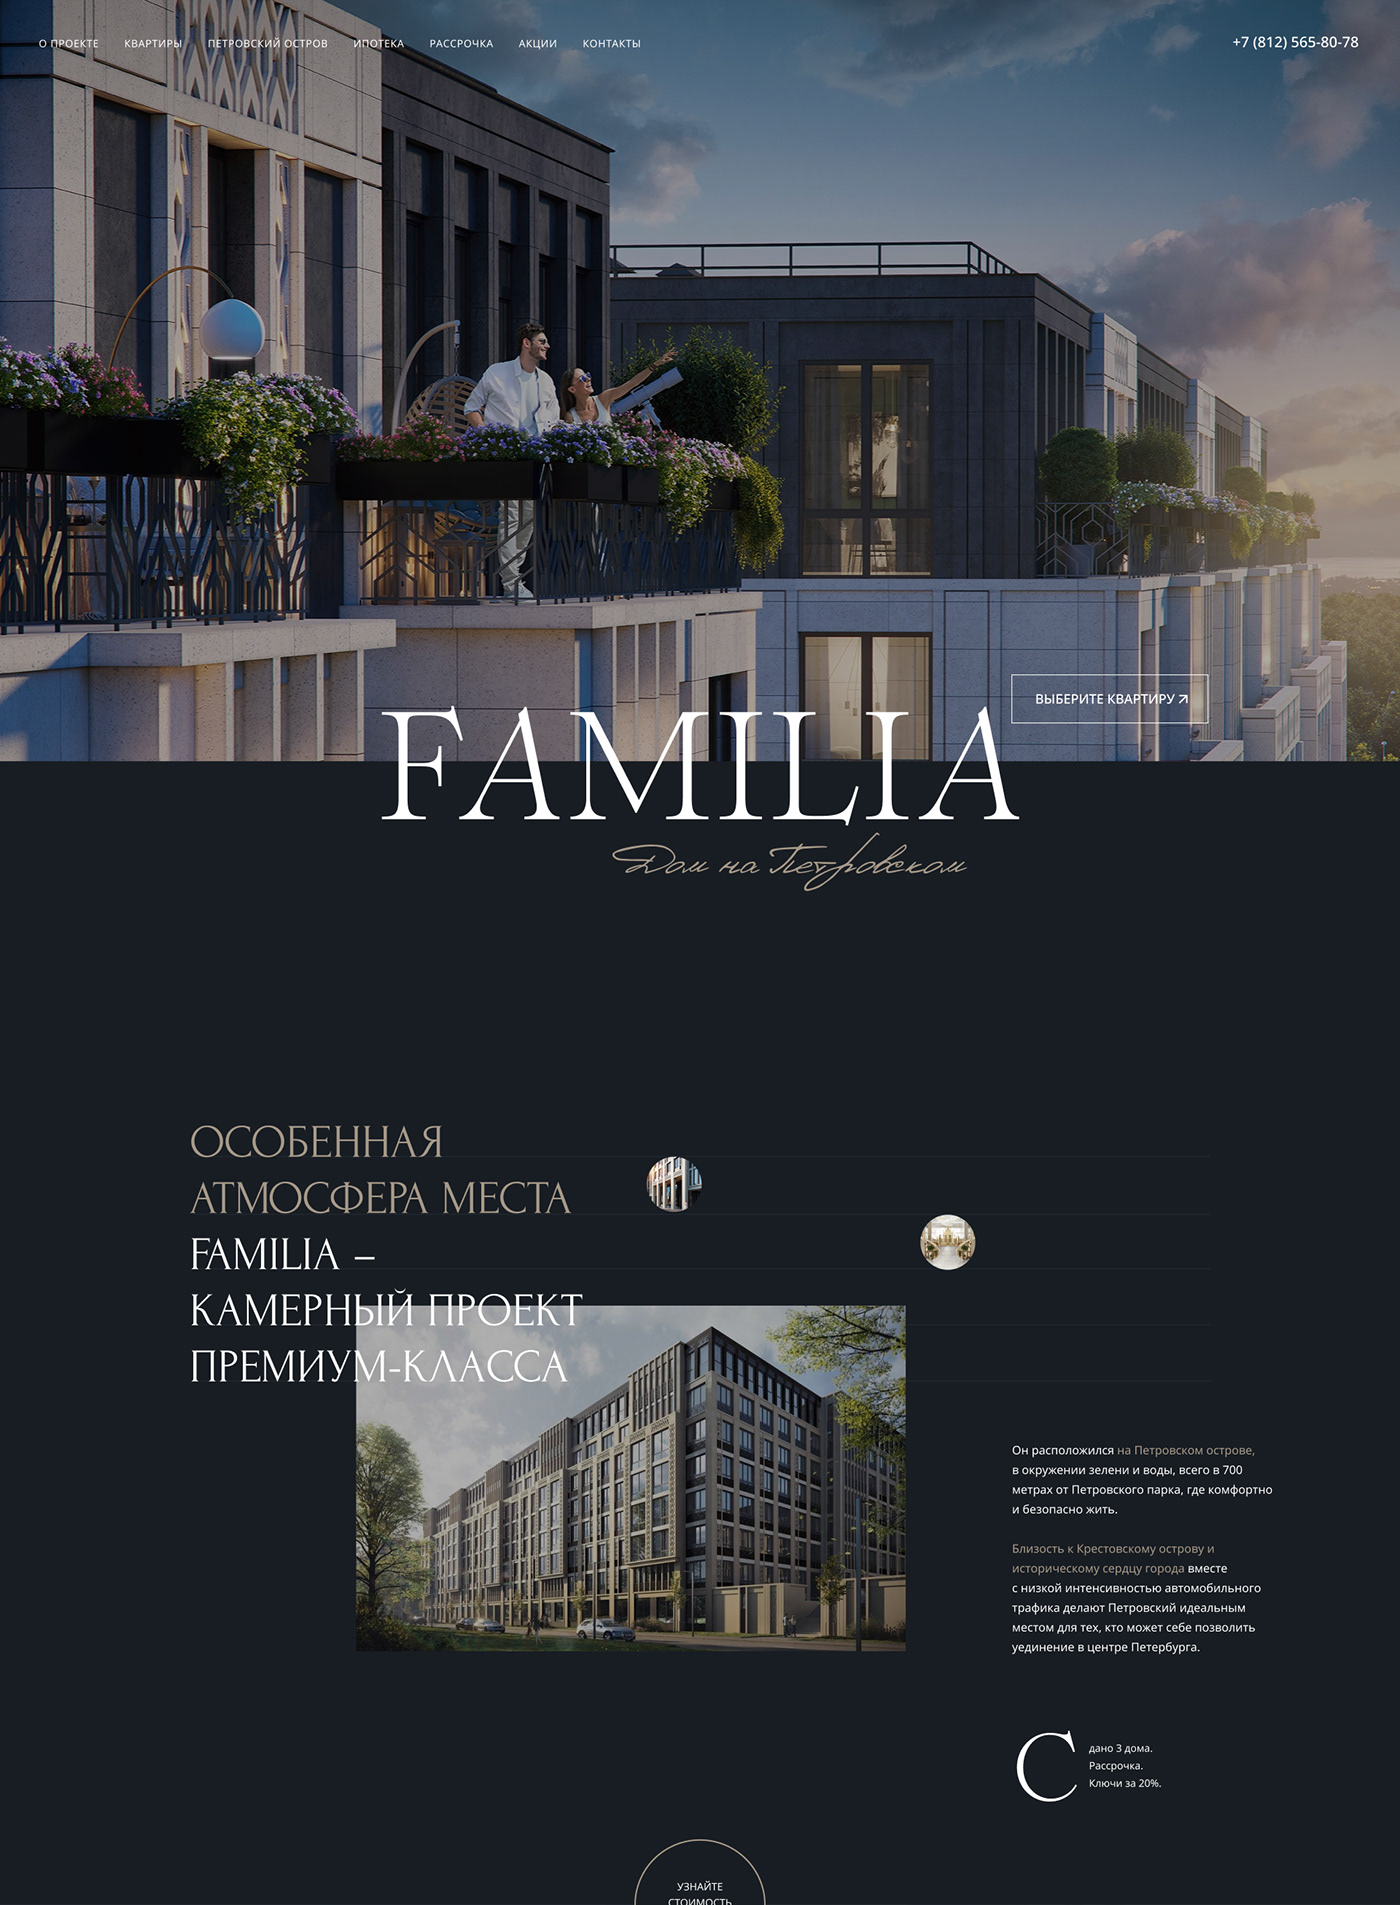 Figma realestate ui design ux/ui Web Design  веб-дизайн дизайн сайта жилой комплекс лендинг недвижимость